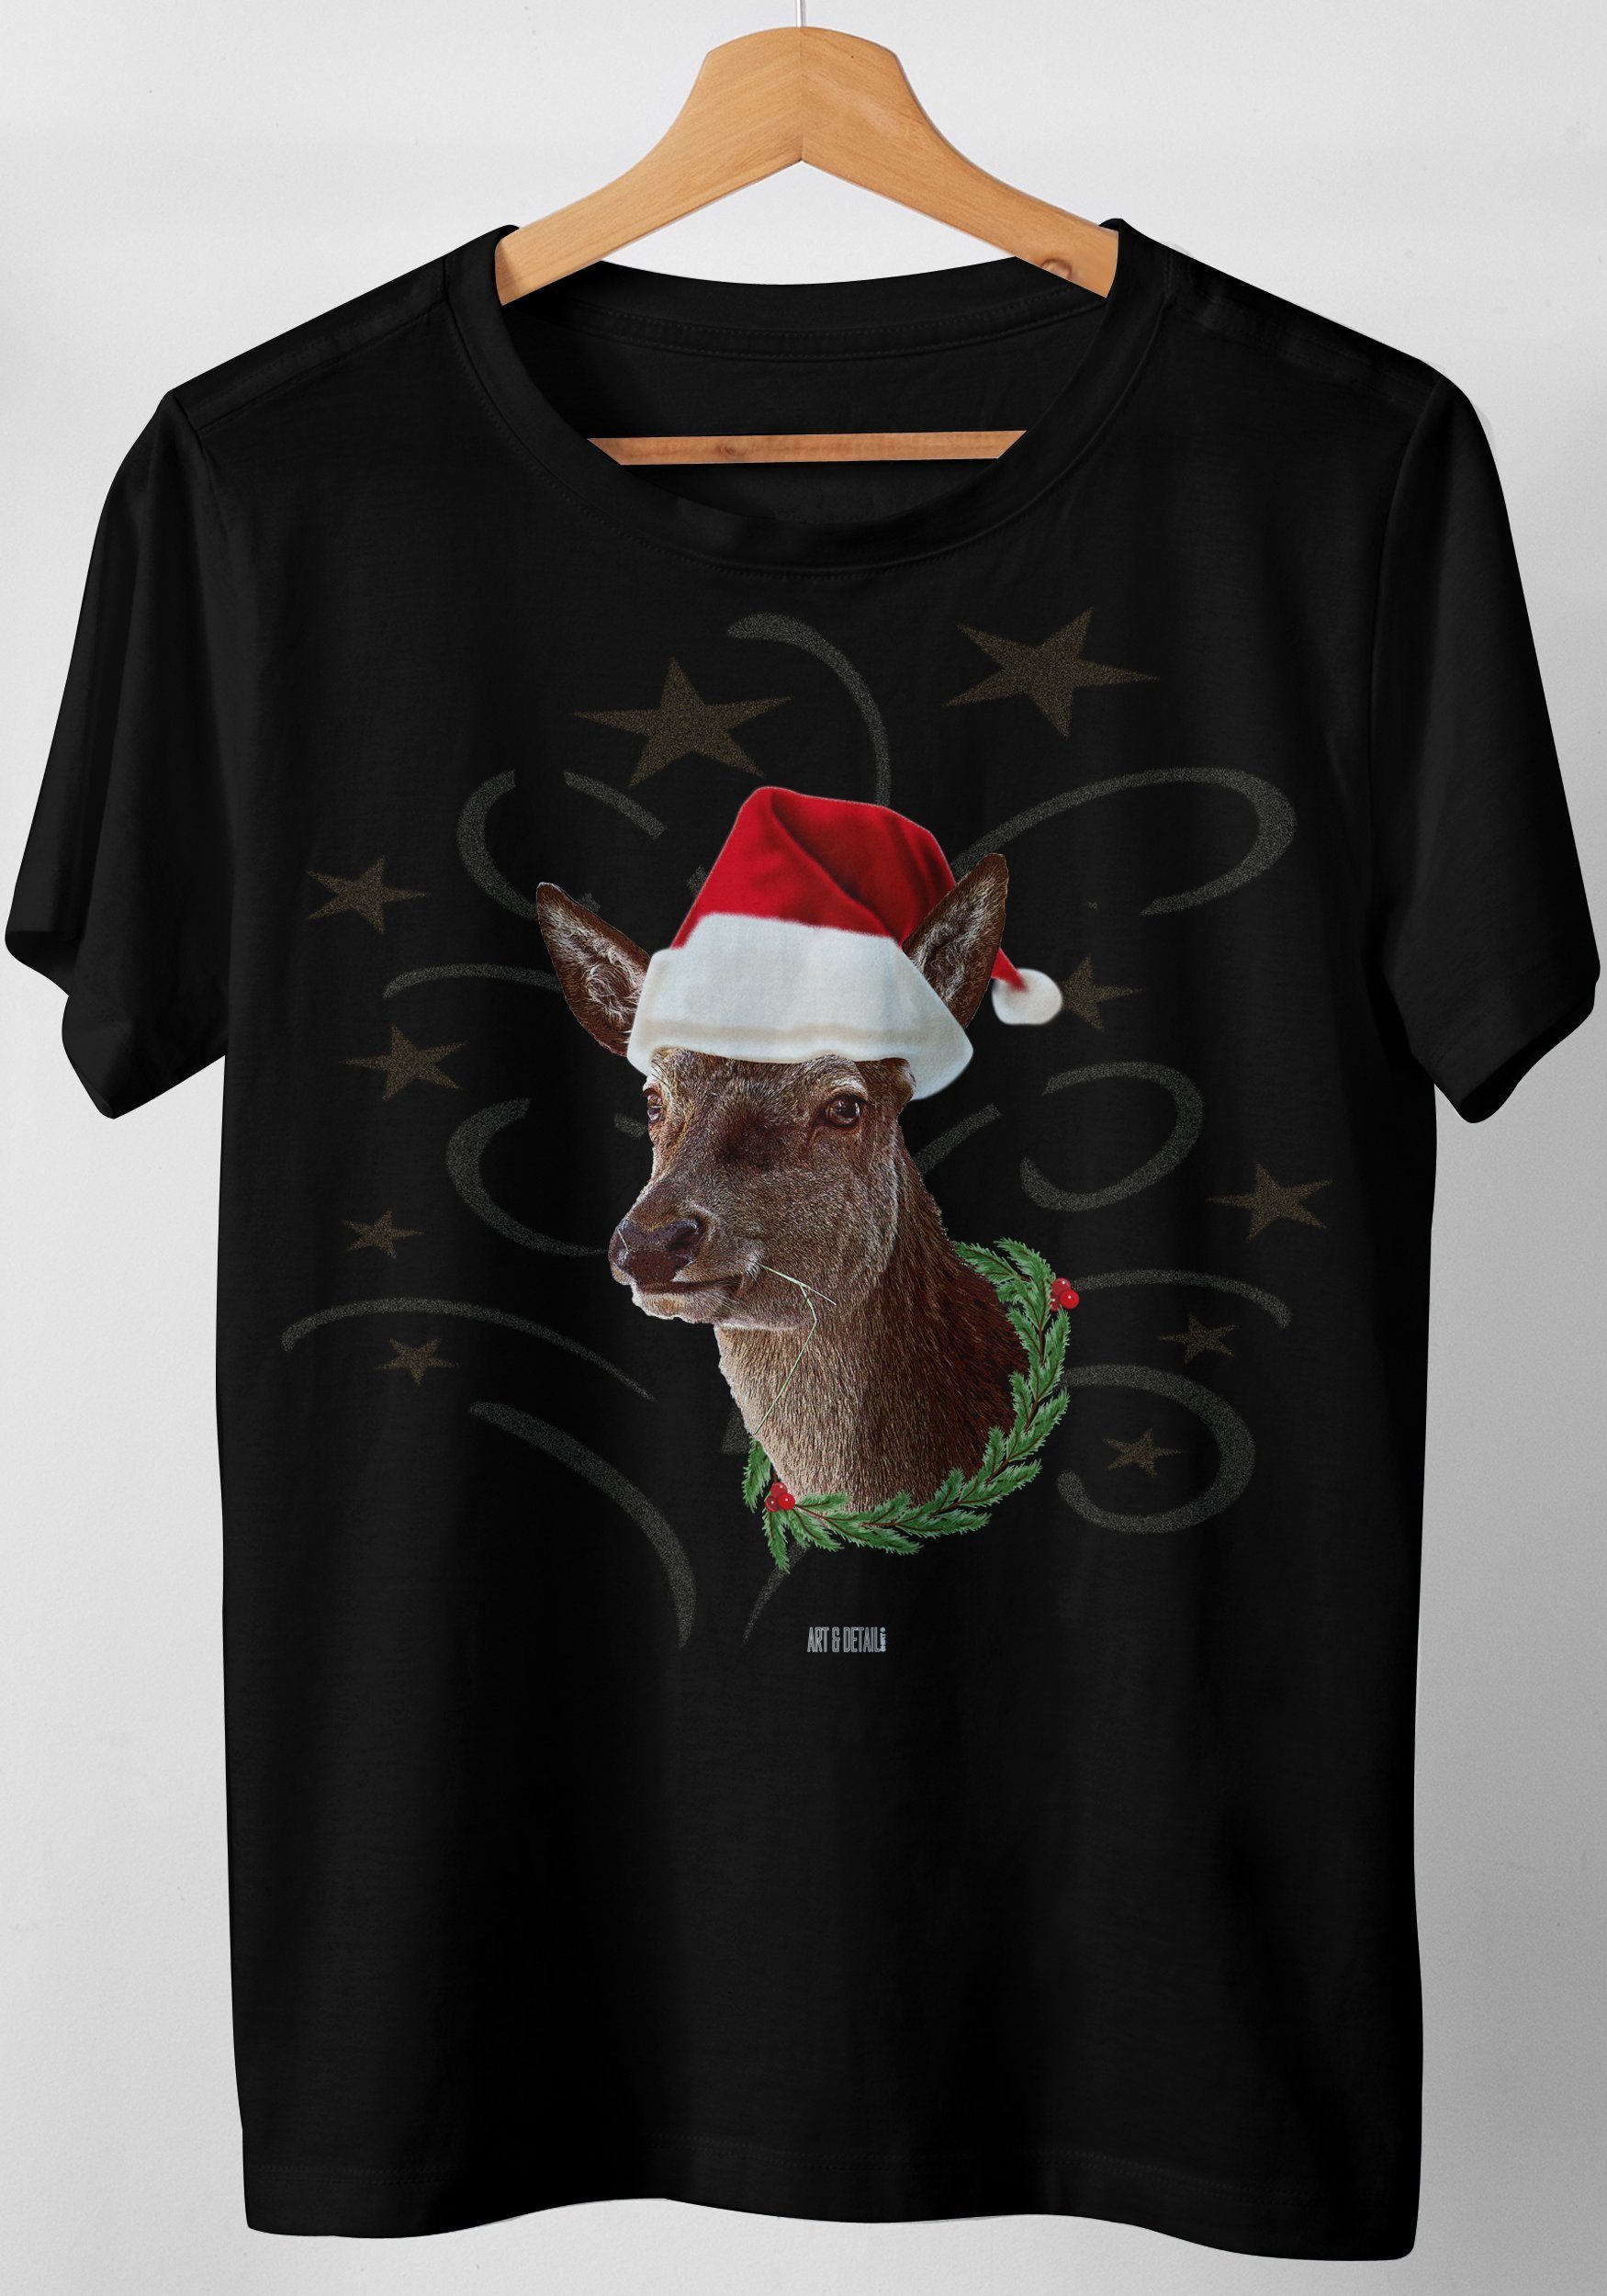 & Design Weihnachtsmütze T-Shirt Xmas Weihnachten Art Reh Mrs Detail Shirt mit